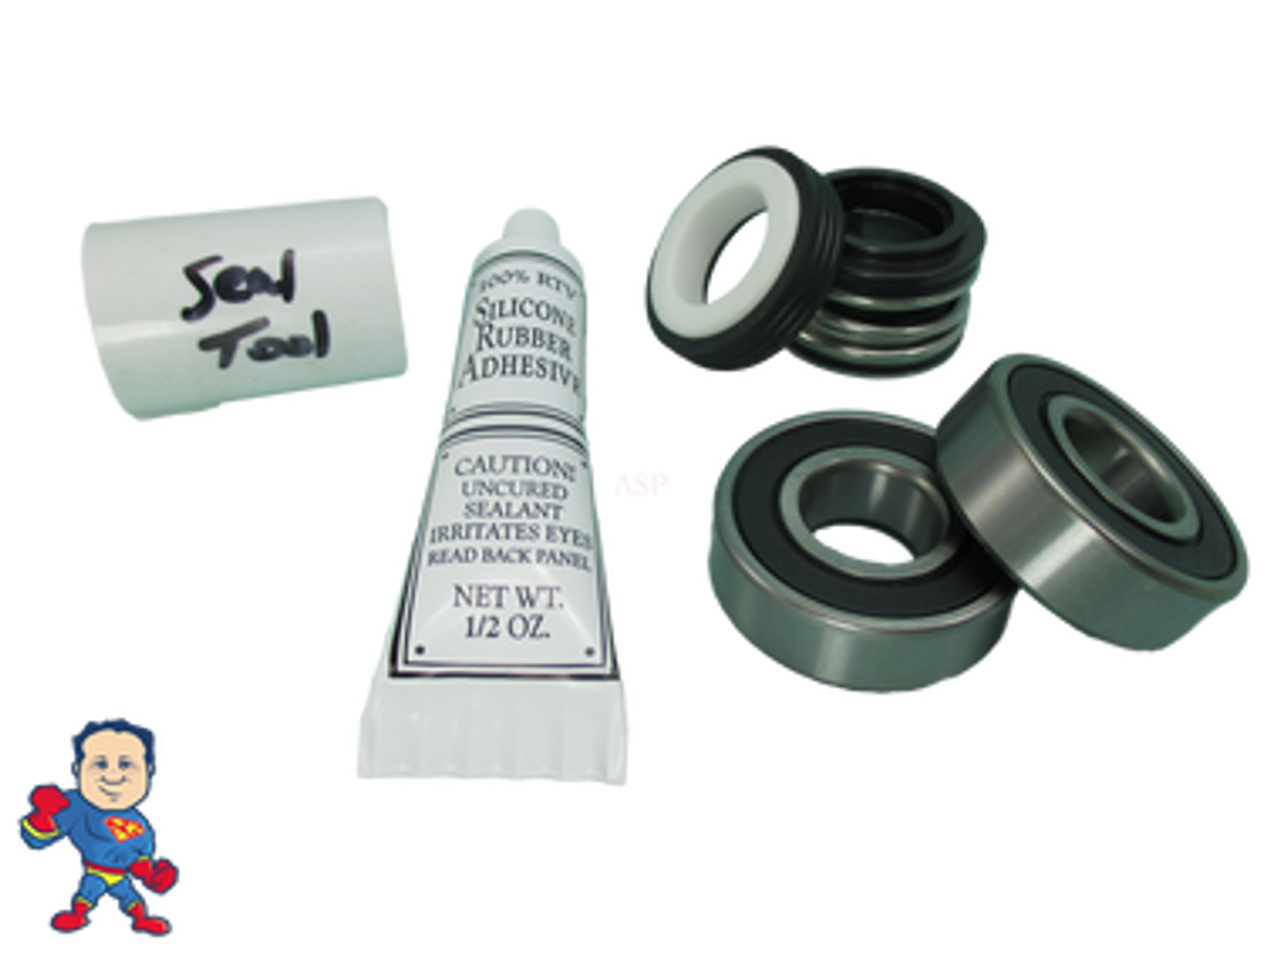 (2) Front Bearing & Seal Pump Parts Kit Fits Most Vico Sta-Rite Spa Hot Tub Pumps